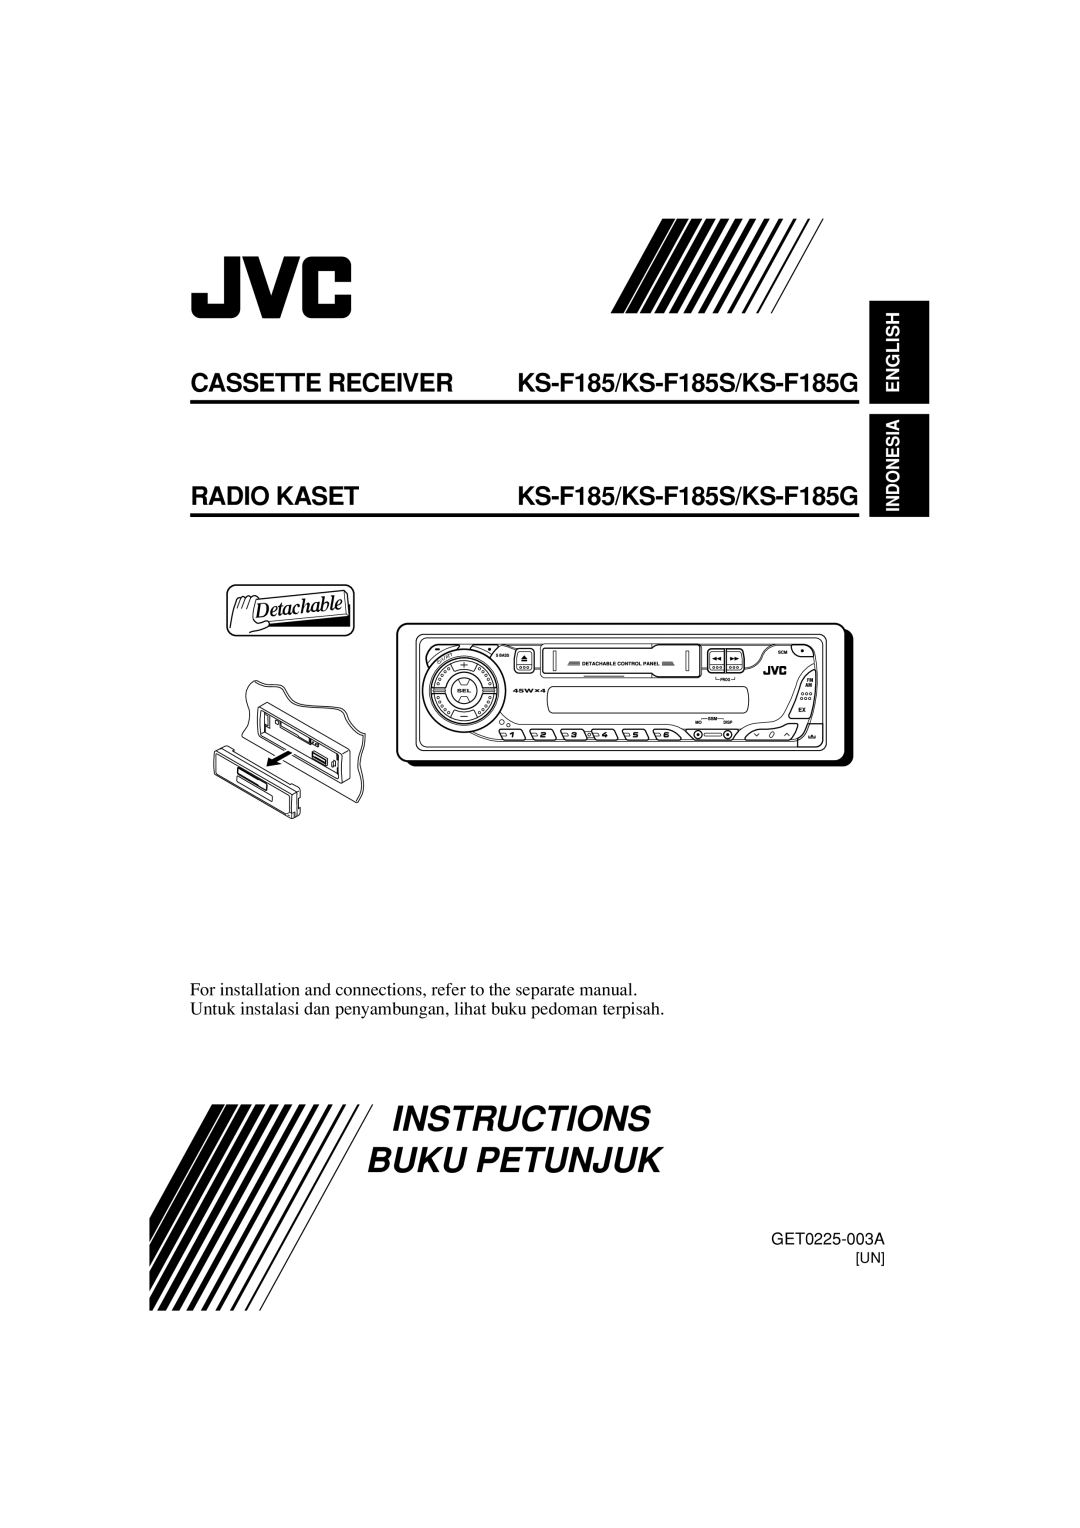 JVC manual Instructions Buku Petunjuk, Radio Kaset, KS-F185/KS-F185S/KS-F185G, Cassette Receiver, English 